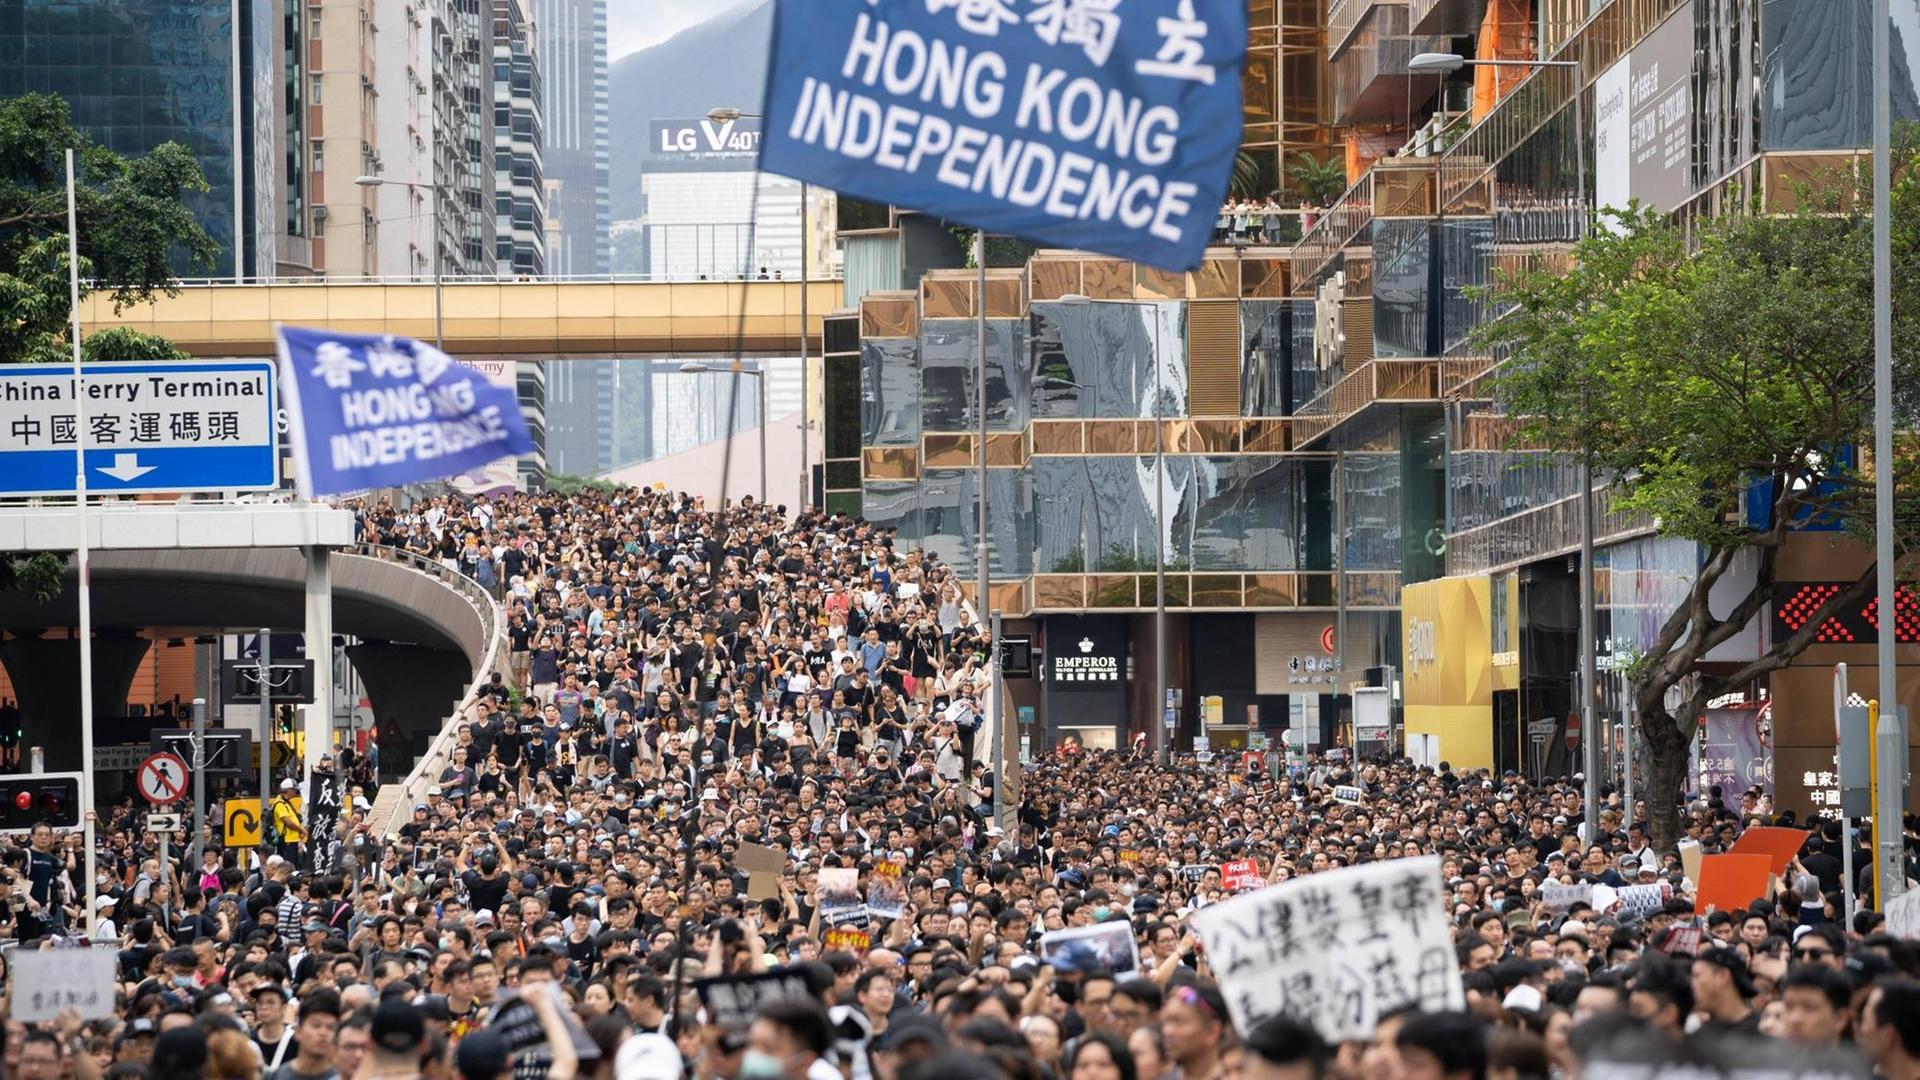 Das Bild zeigt tausende Demonstranten bei einer Anti-Regierungs-Demostration in HongKong am 07. Juli. Inmitten der Menschenmenge sieht man ein Transparent mit der Aufschrift "Hong Kong Independence"